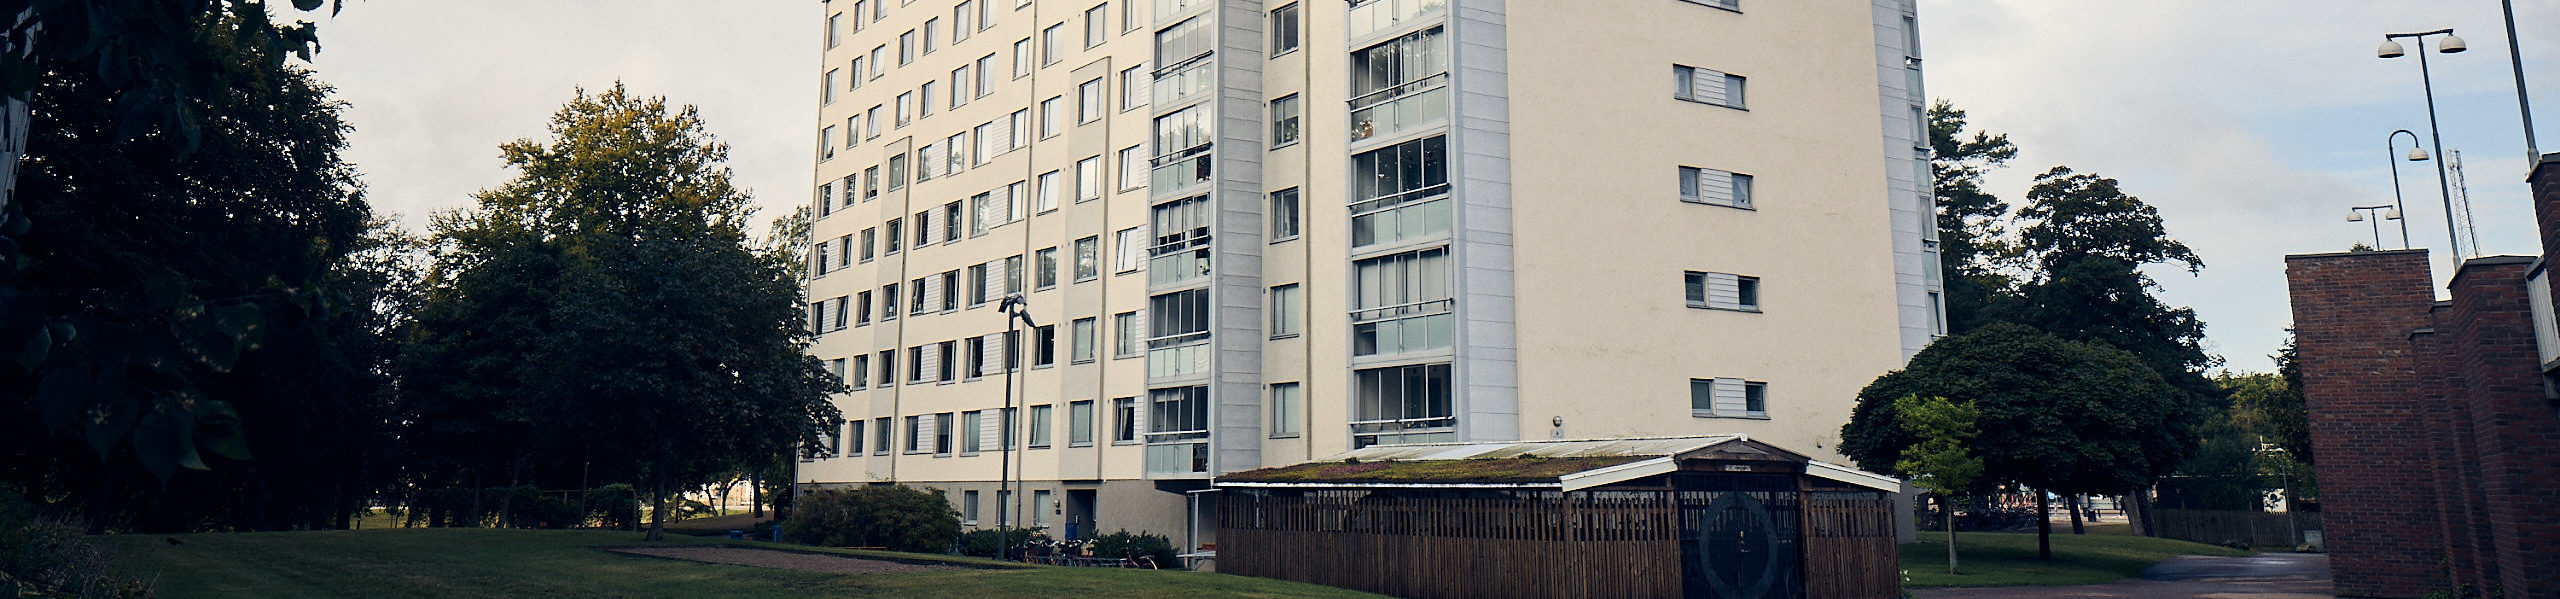 Flerfamiljshus med pusad fasad med inglasade balkonger